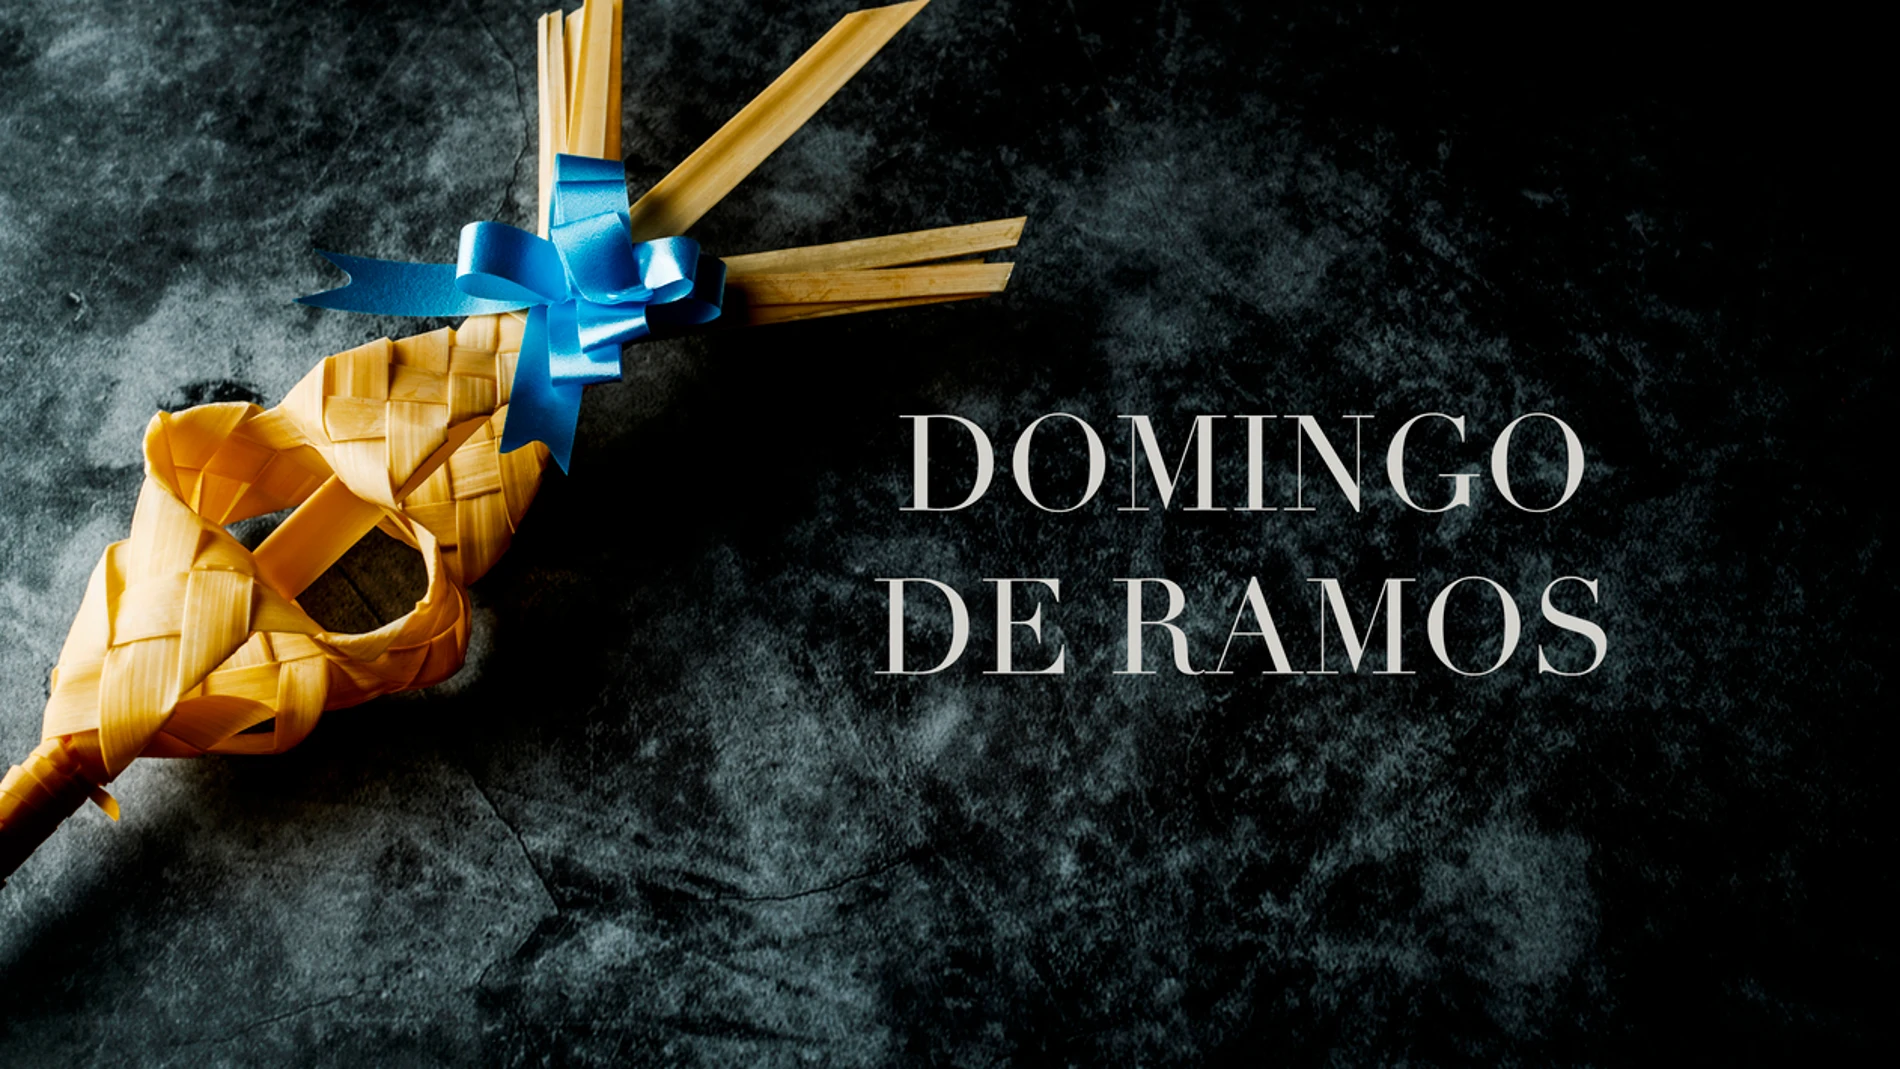 ¡Feliz Domingo de Ramos! ¿Qué simbolizan las ramas? 